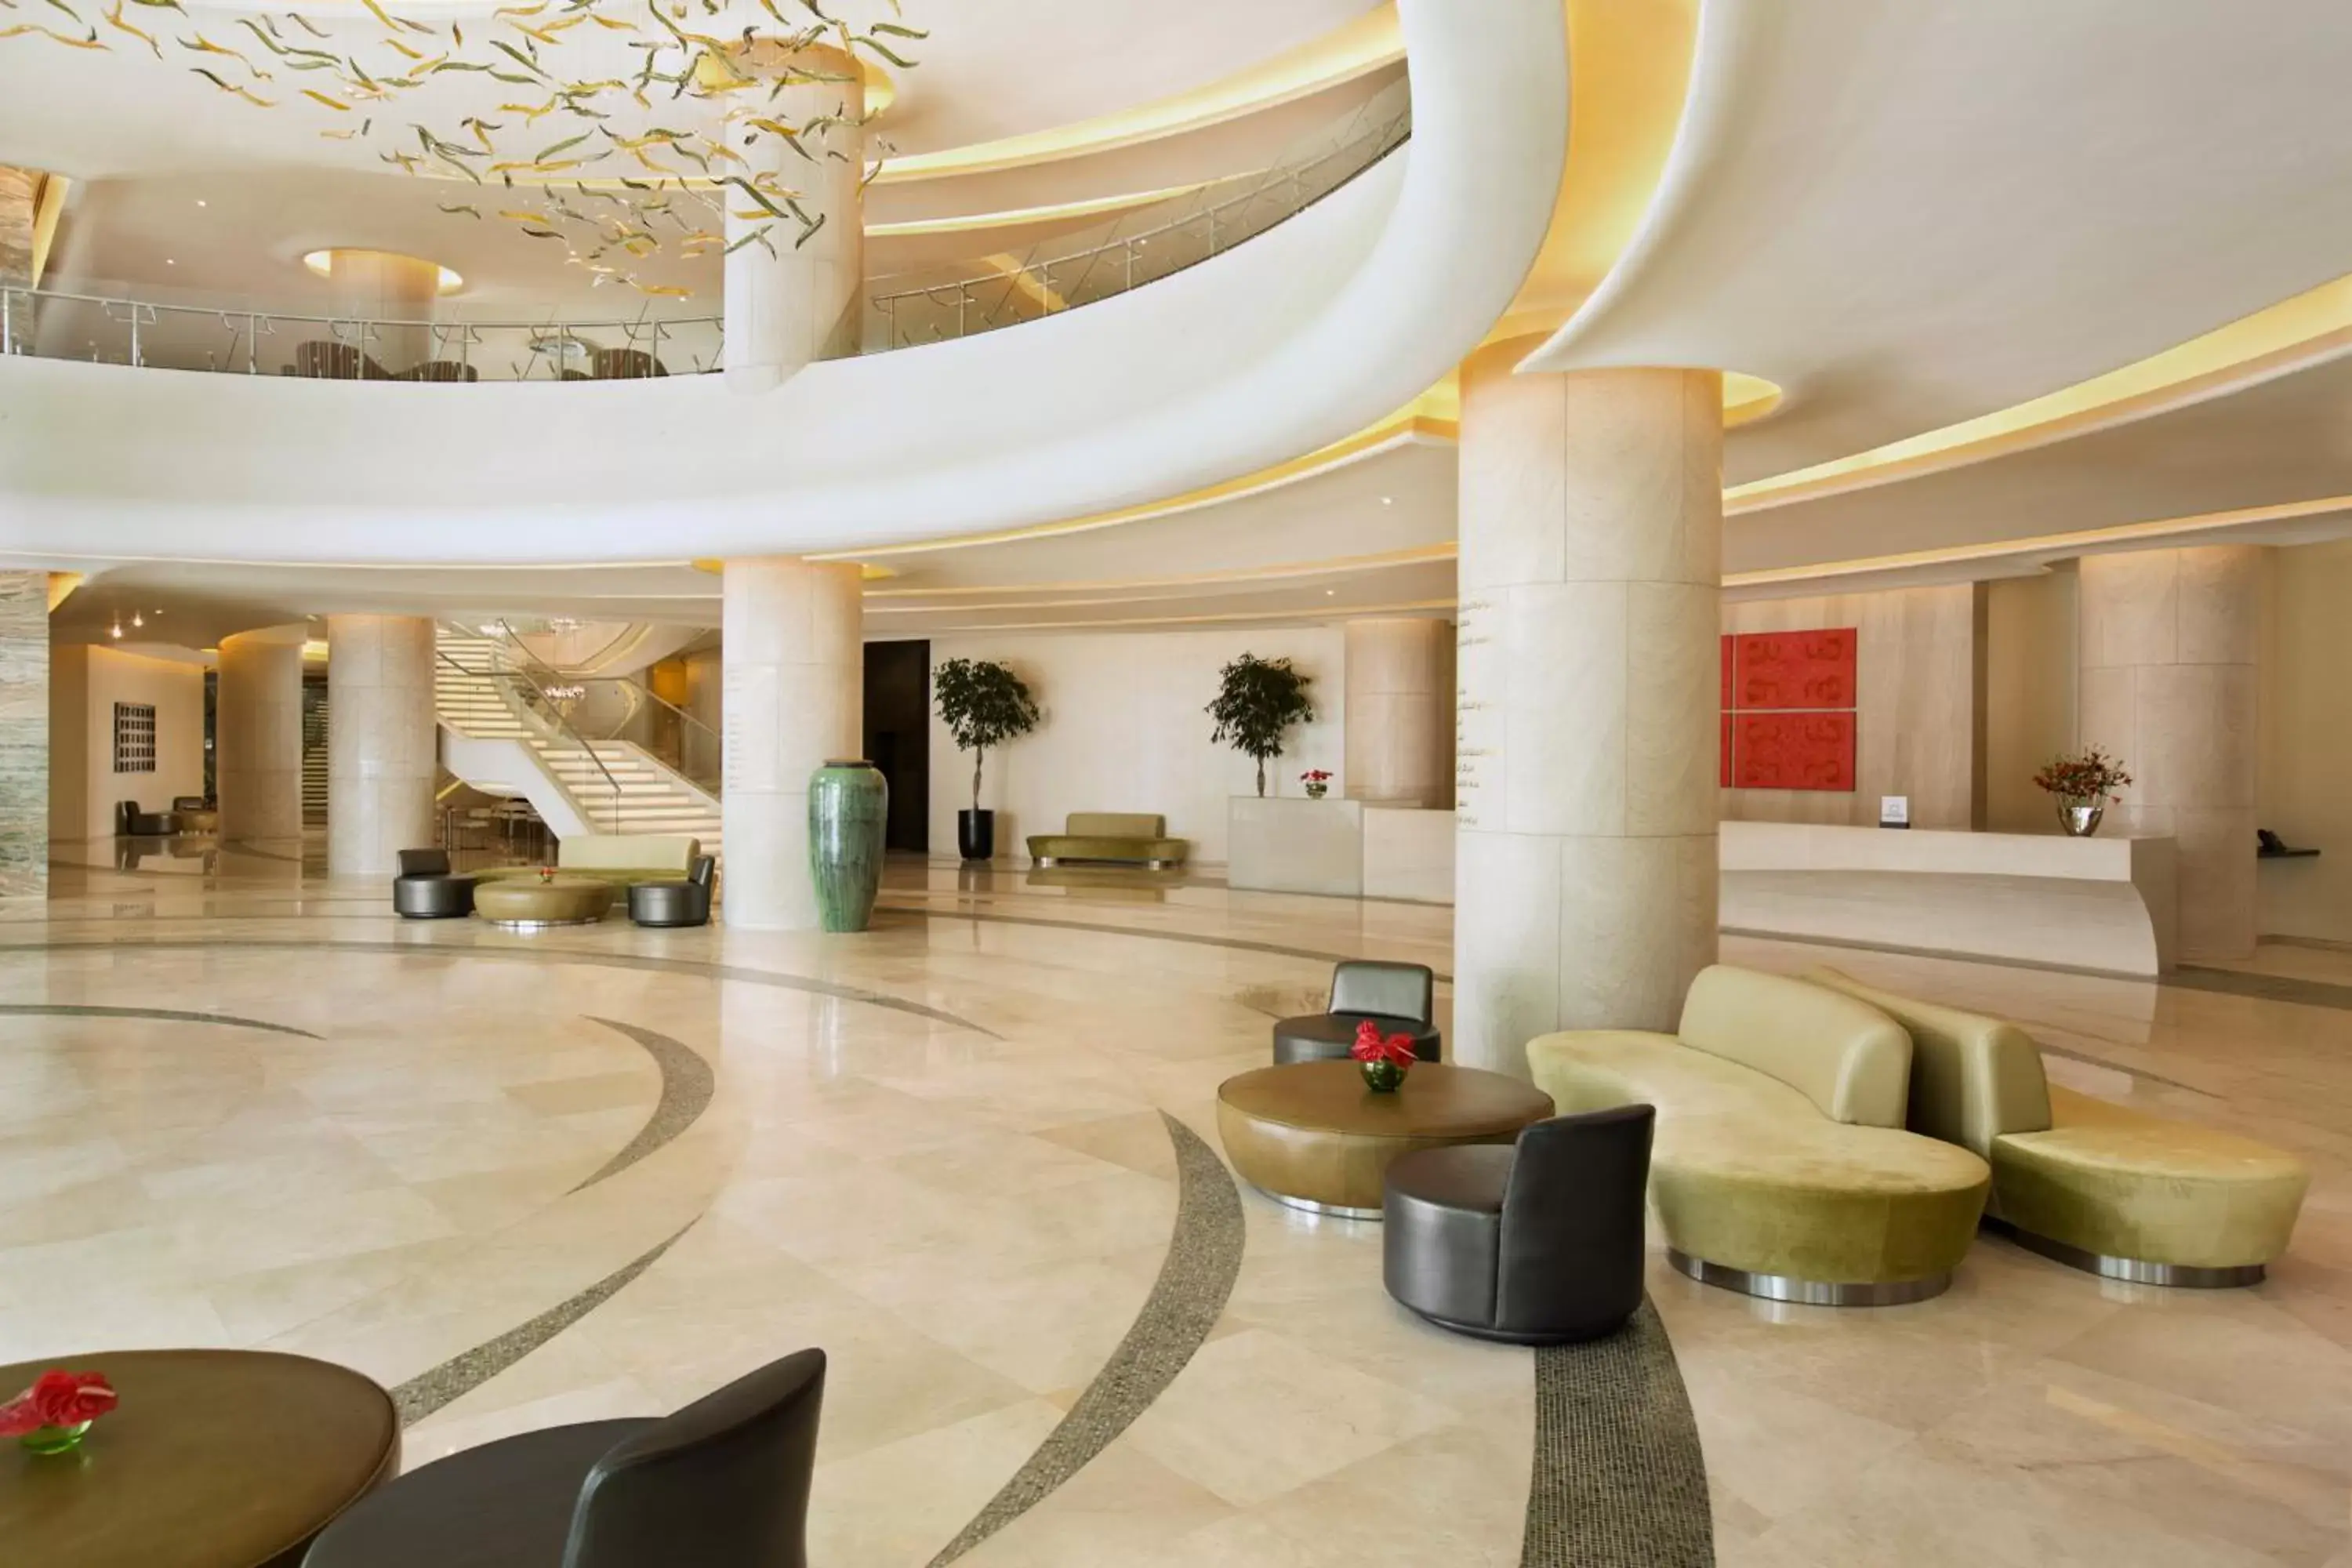 Lobby or reception, Lobby/Reception in Millennium Al Rawdah Hotel